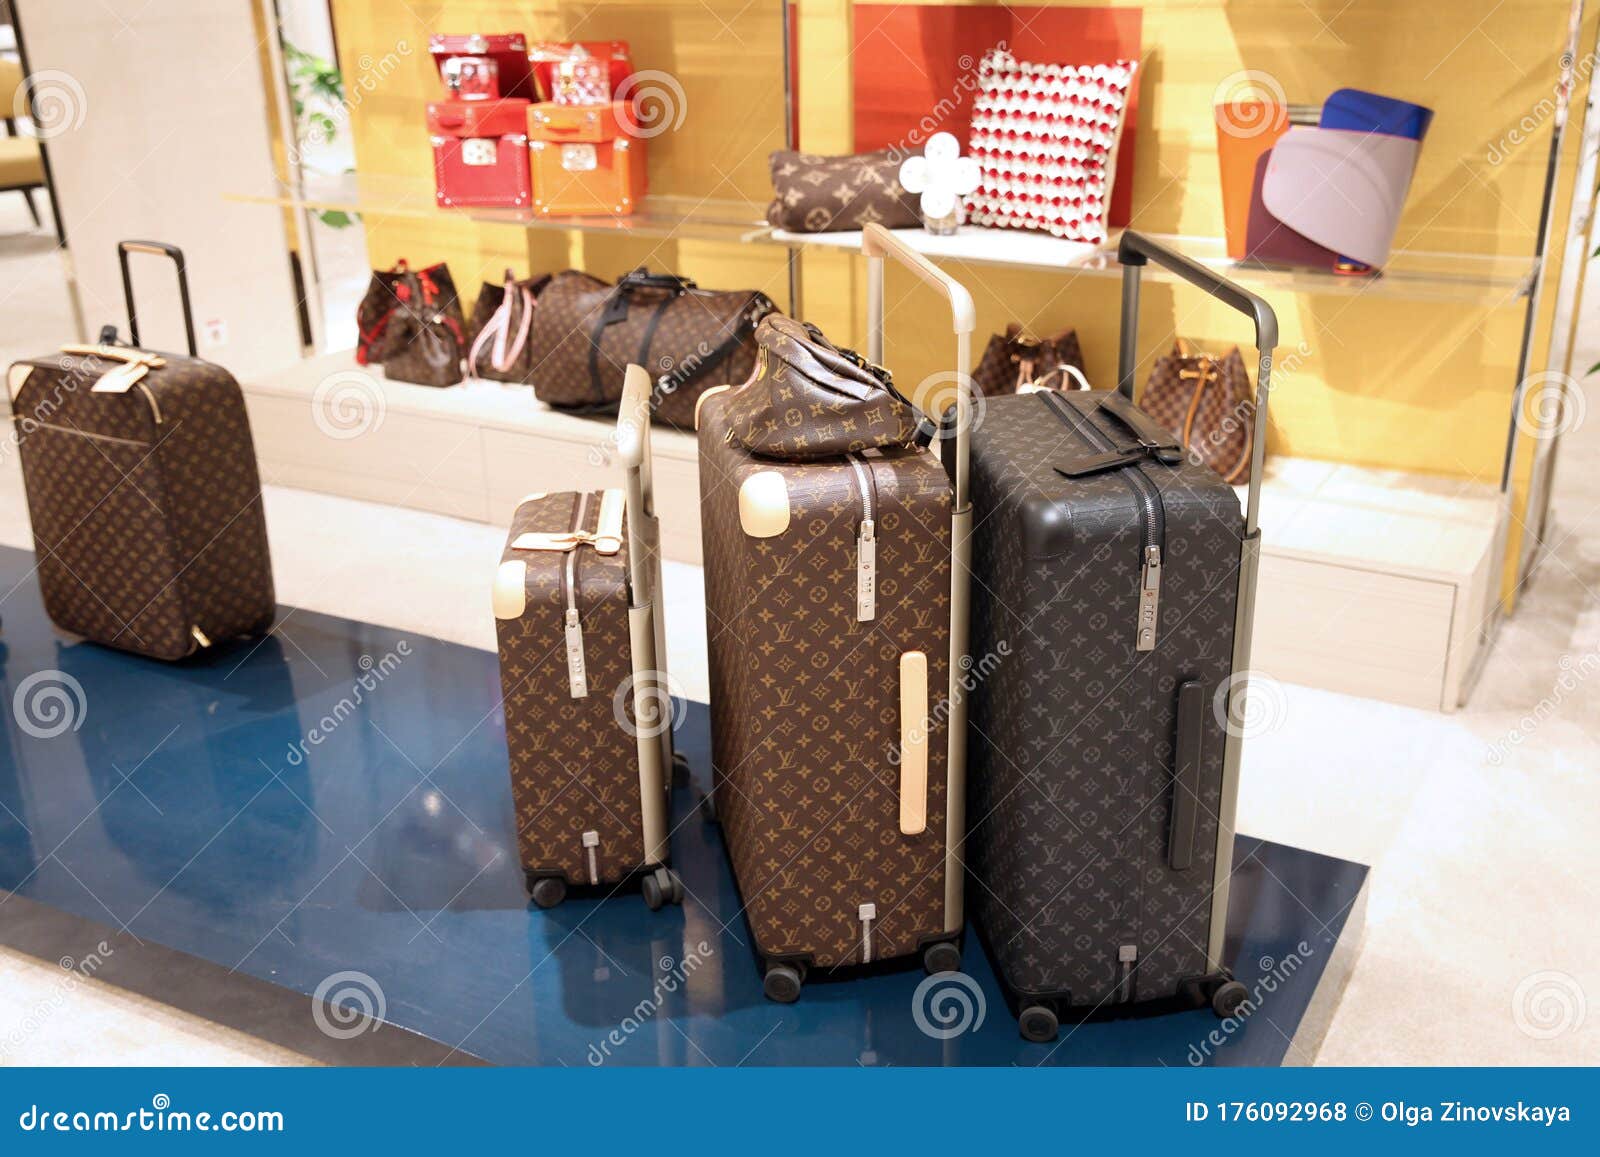 luxury louis vuitton luggage set